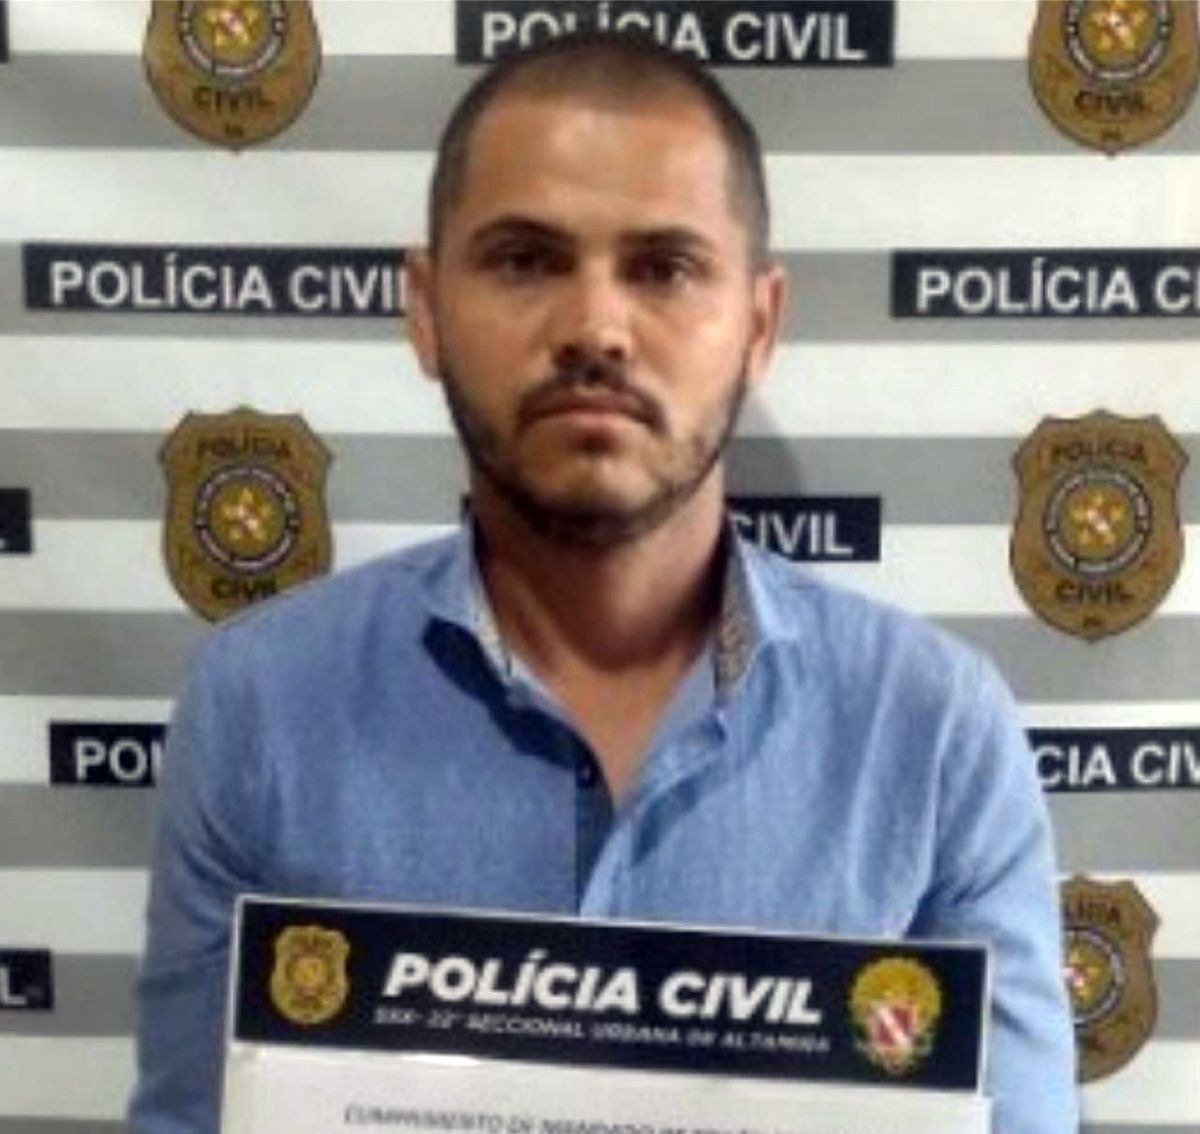 Investigações policiais apontam que acusado praticou os crimes em pelo menos três Estados; uma operação conjunta das polícias Civil do ES, SP e Pará conseguiu detê-lo